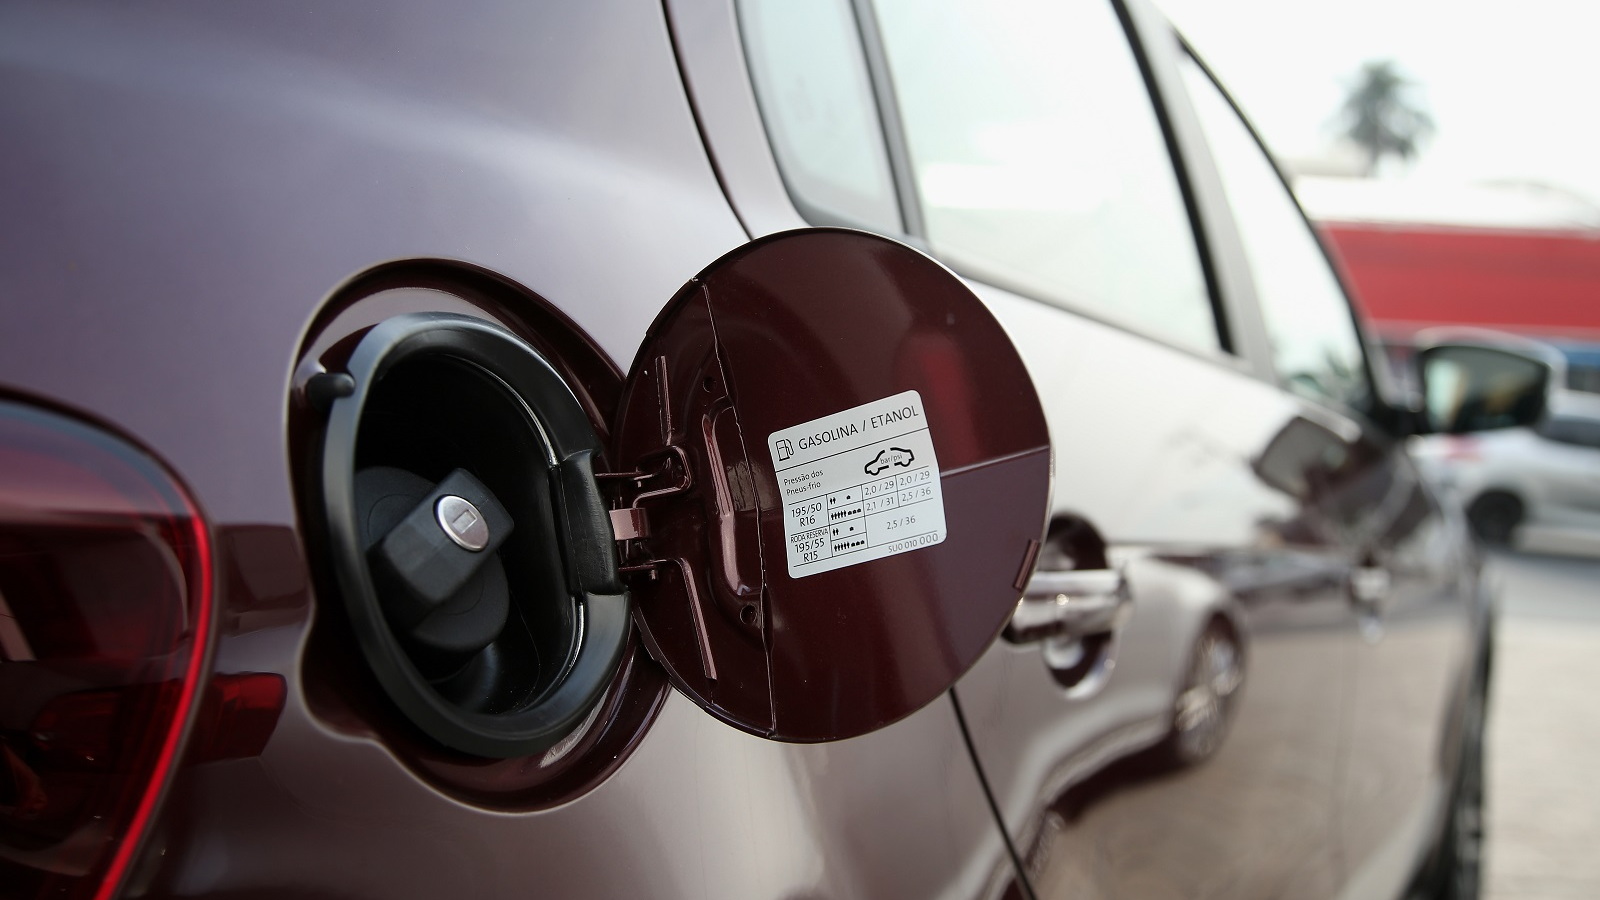 Fuel filler of Volkswagen Gol, Brazilian flex-fuel vehicle